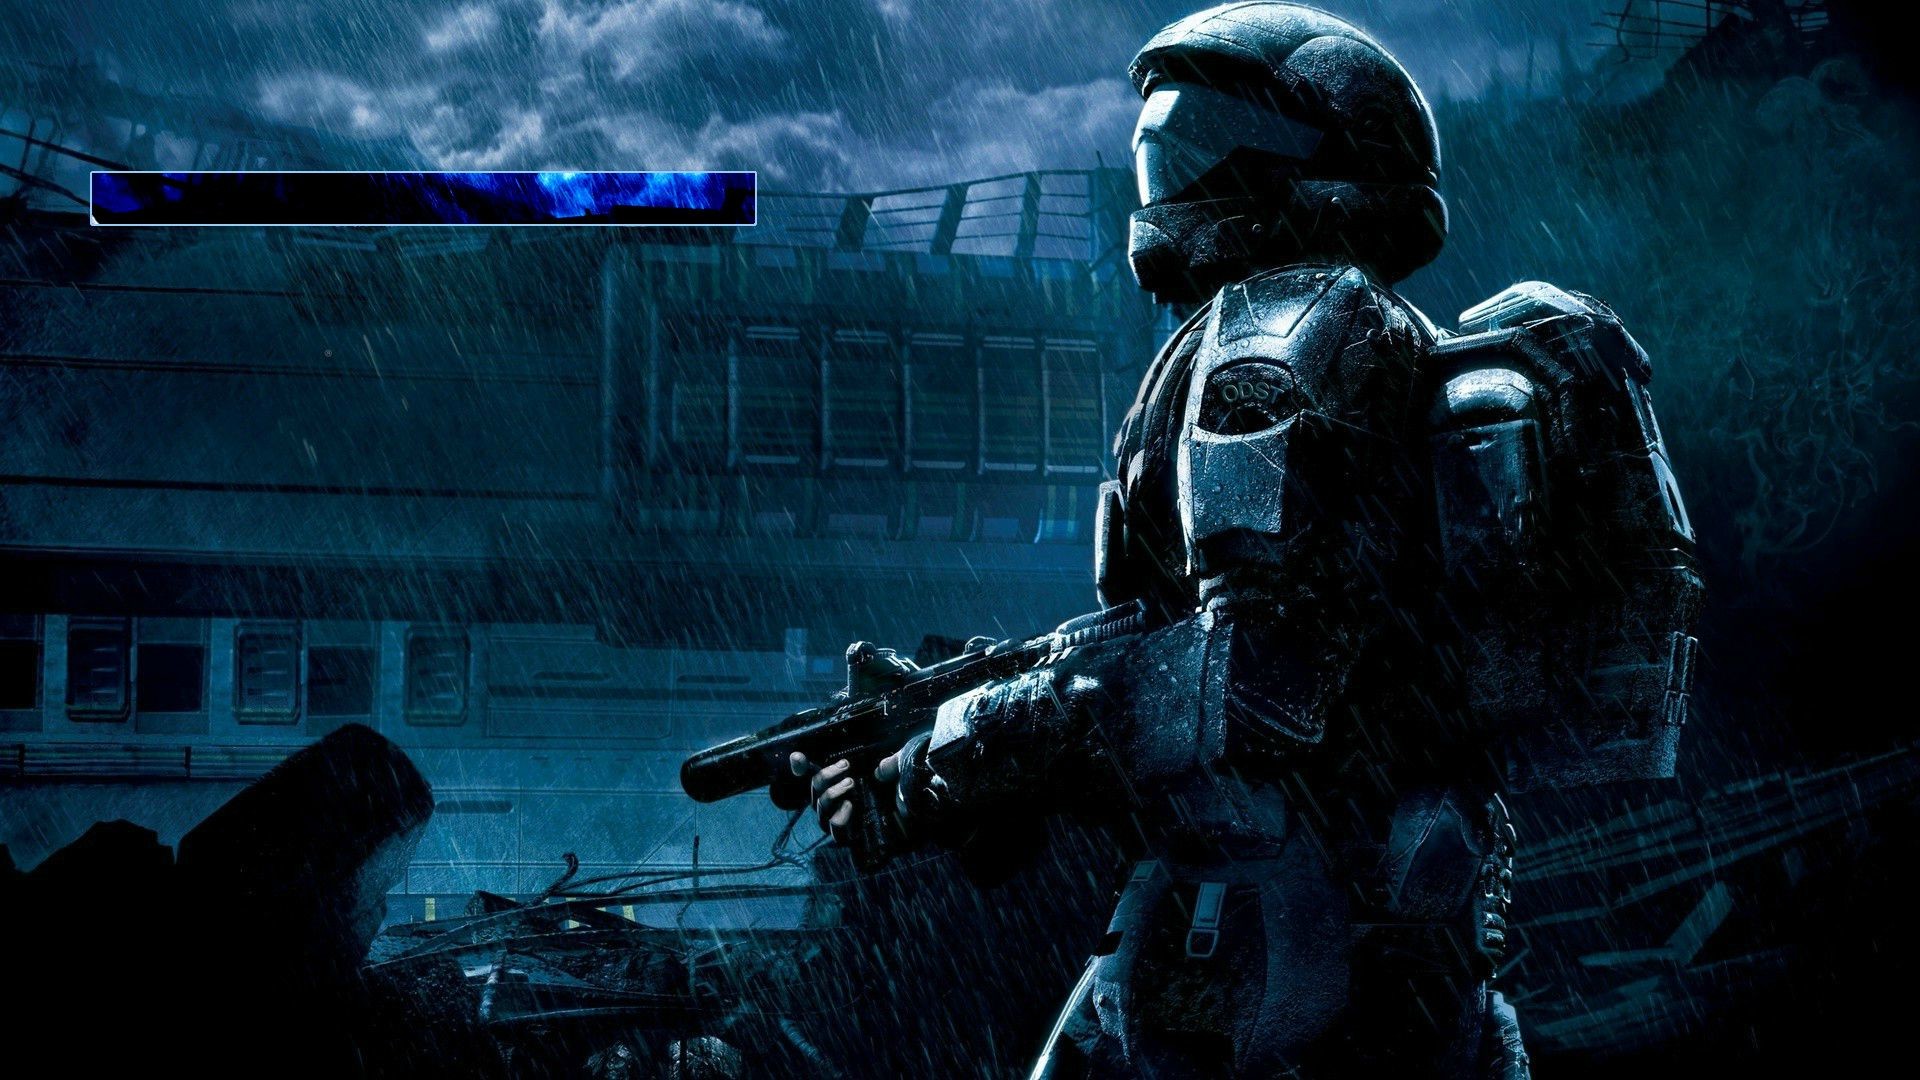 Halo - Halo 3 Odst Wallpaper Hd - HD Wallpaper 